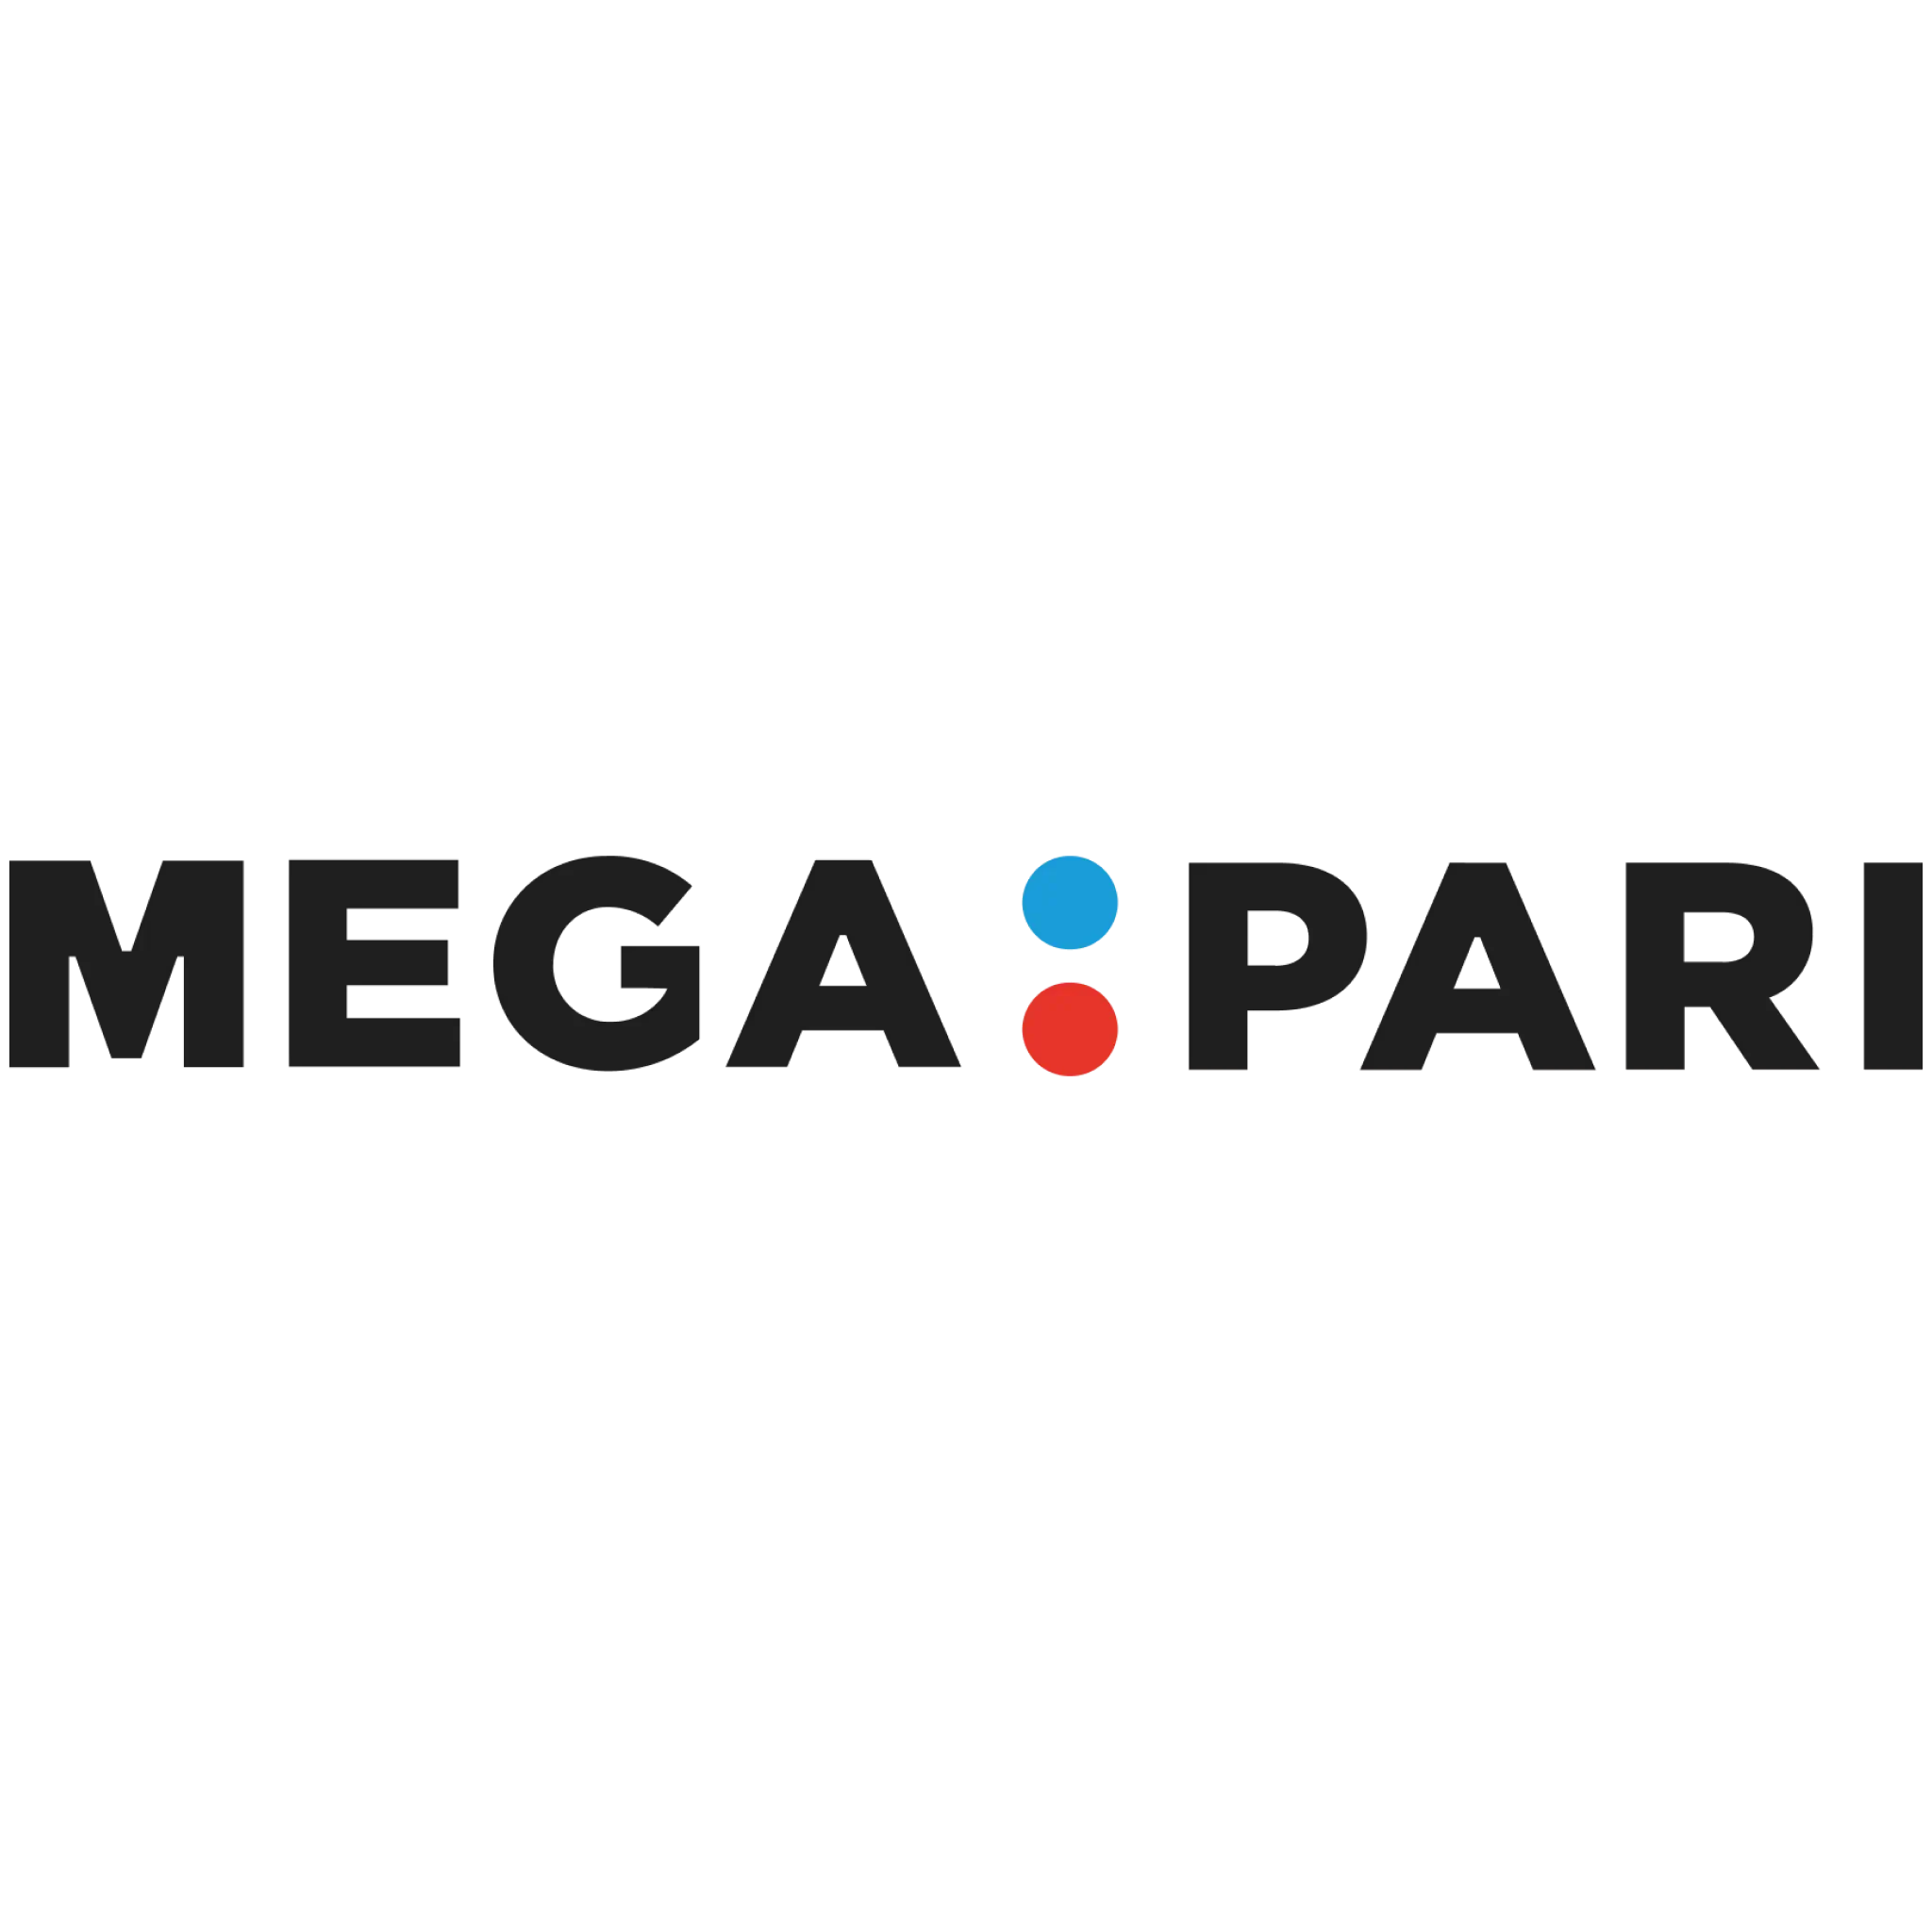 Megapari Review